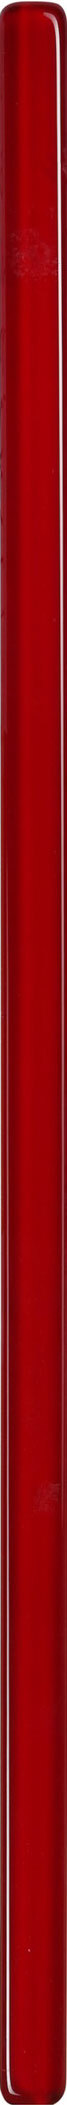 Плитка бордюр Керамин Соло 1 стеклянная красная 600x20x8,5 мм бордюр керамин фреш 1 2х40 см